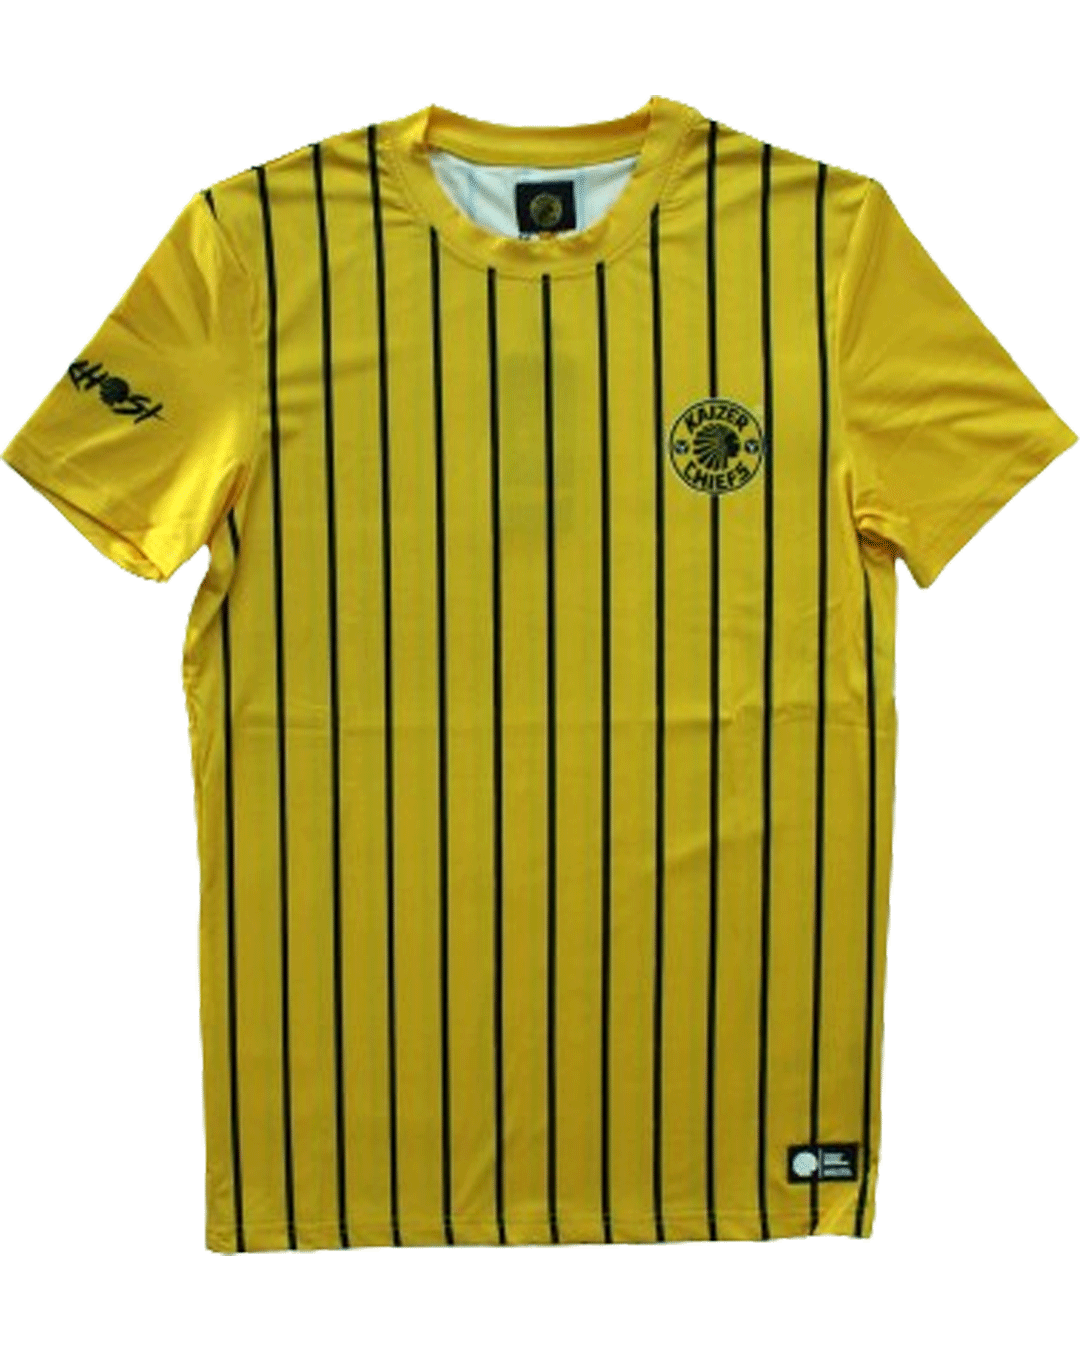 Kaizer Chiefs Gold T-Shirt